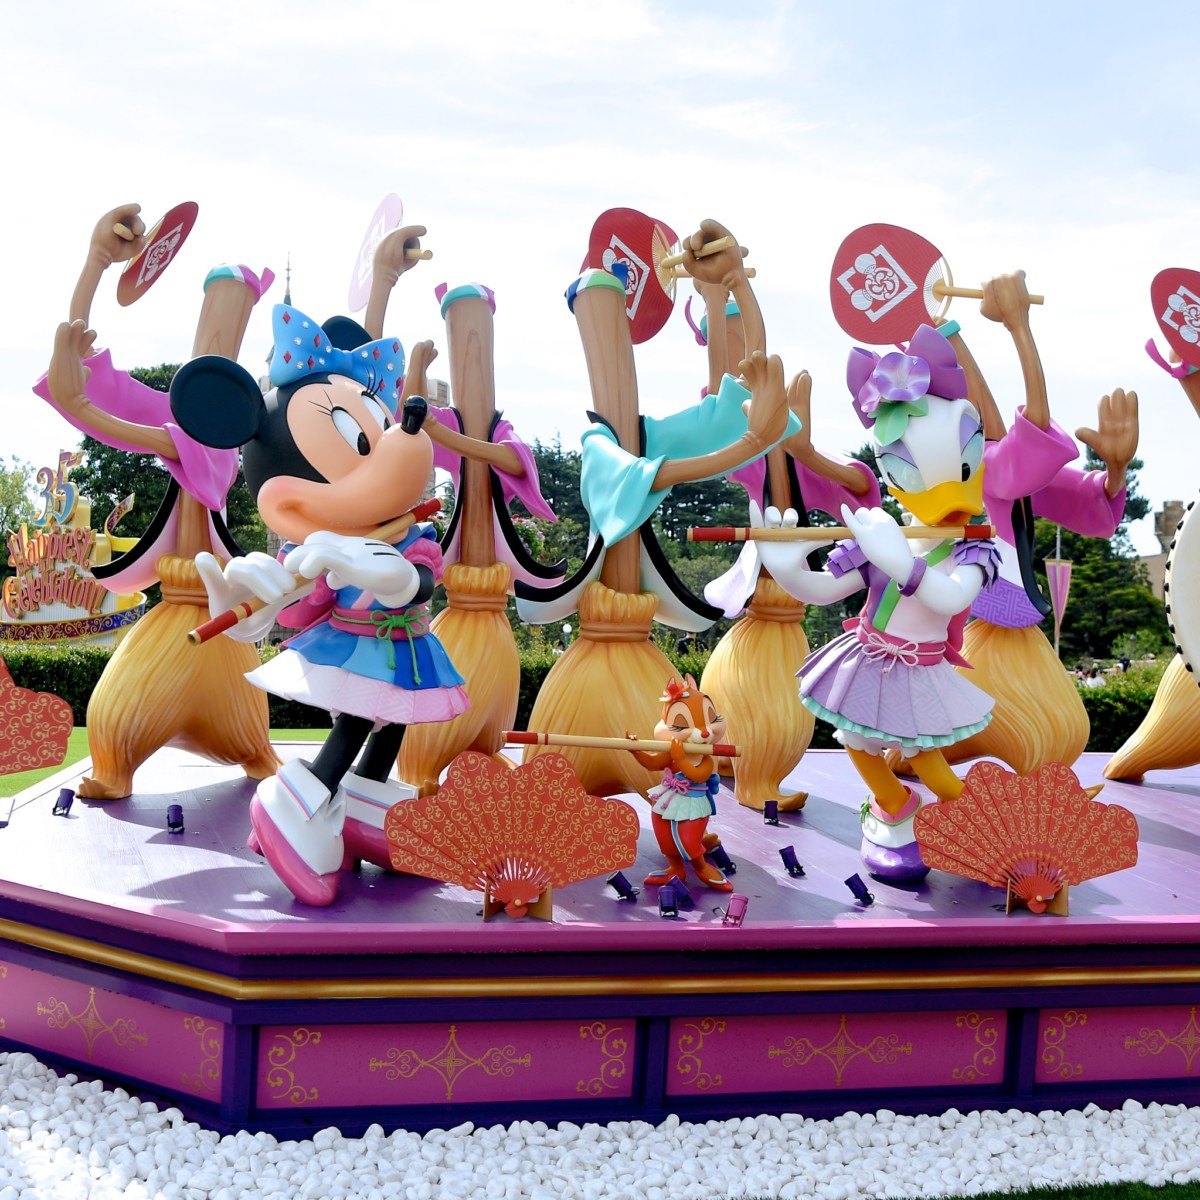 ミニーバナー お祭りを楽しむミッキーたち 東京ディズニーランド ディズニー夏祭り18 デコレーション